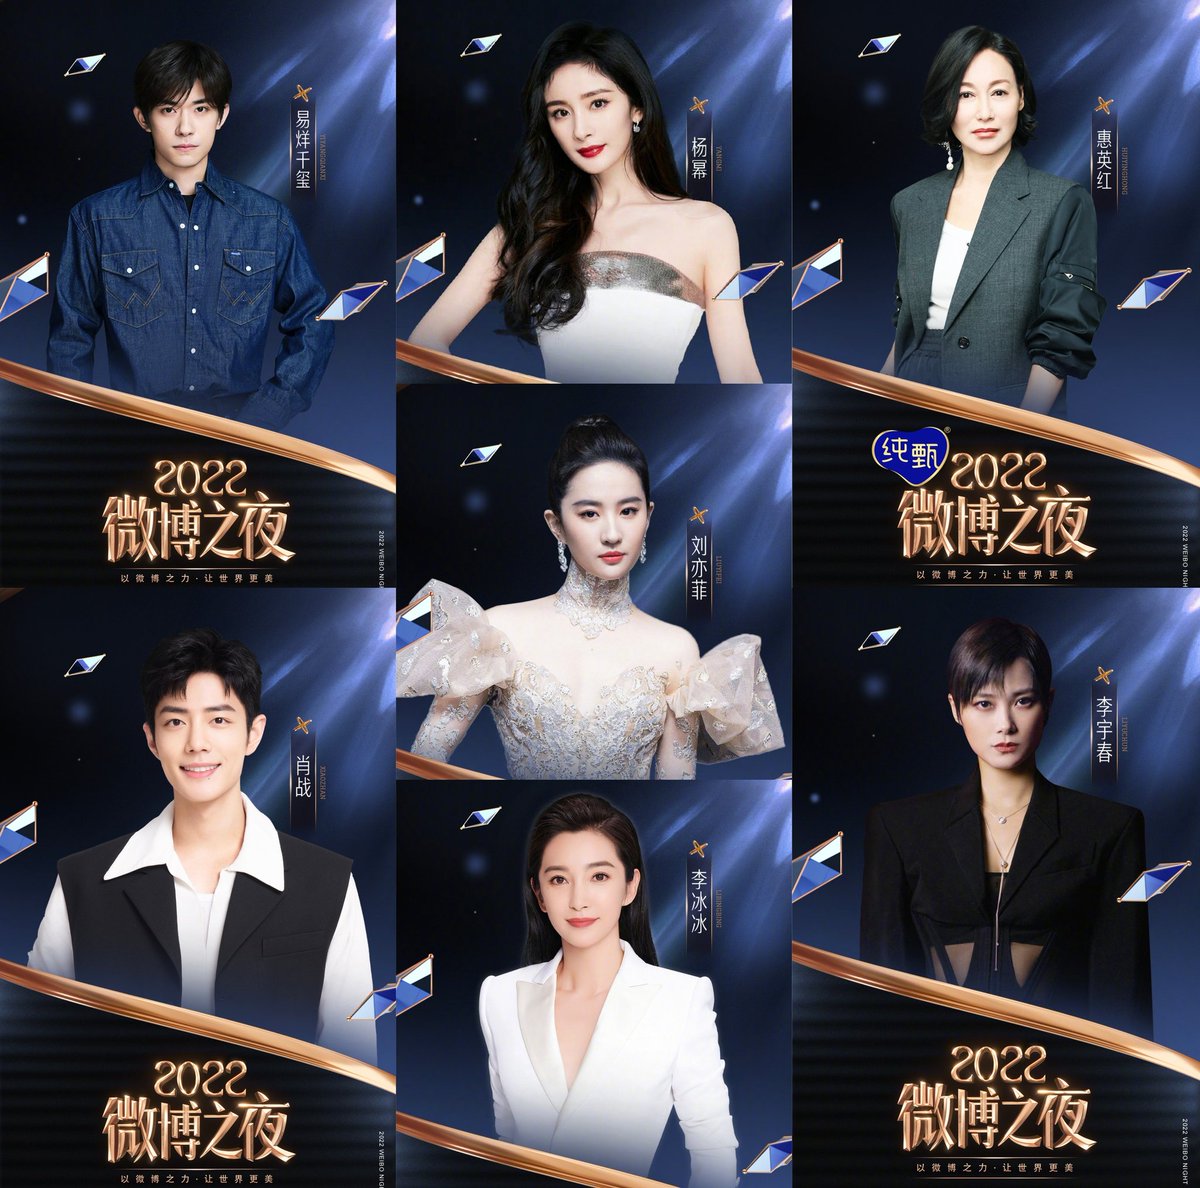 📝 Weibo Night officially announces the 10th lineup of guests for the grand ceremony on March 25th!
#YiYangqianxi, #XiaoZhan, #YangMi, #LiuYifei, #LiBingbing, #KaraWai, #LiYuchun